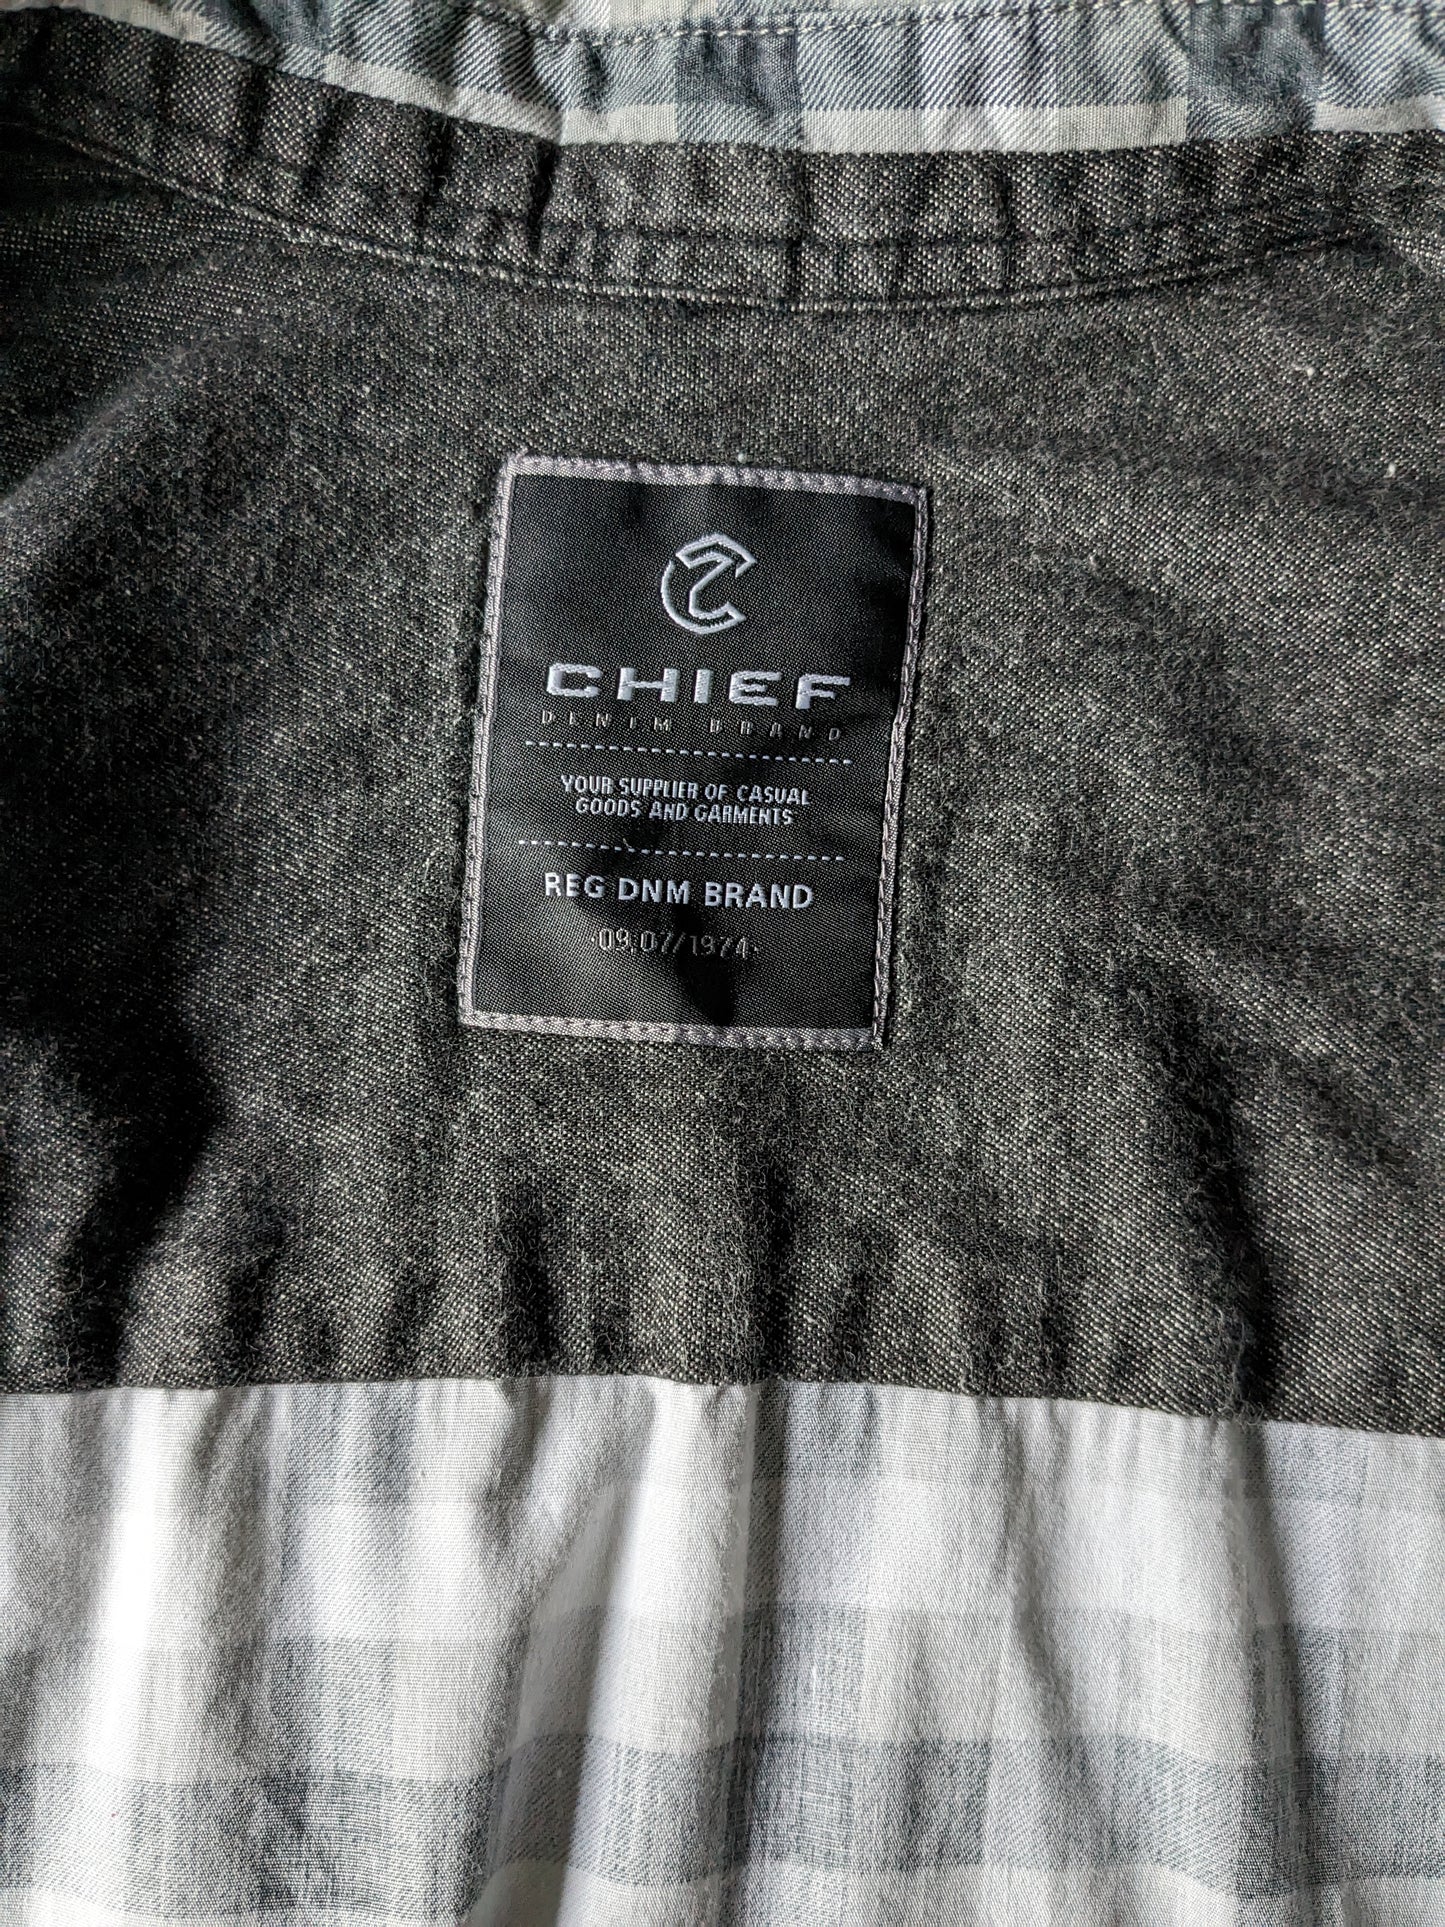 Shirt principale con borchie. Black grigio controllato. Dimensione XL / XXL.